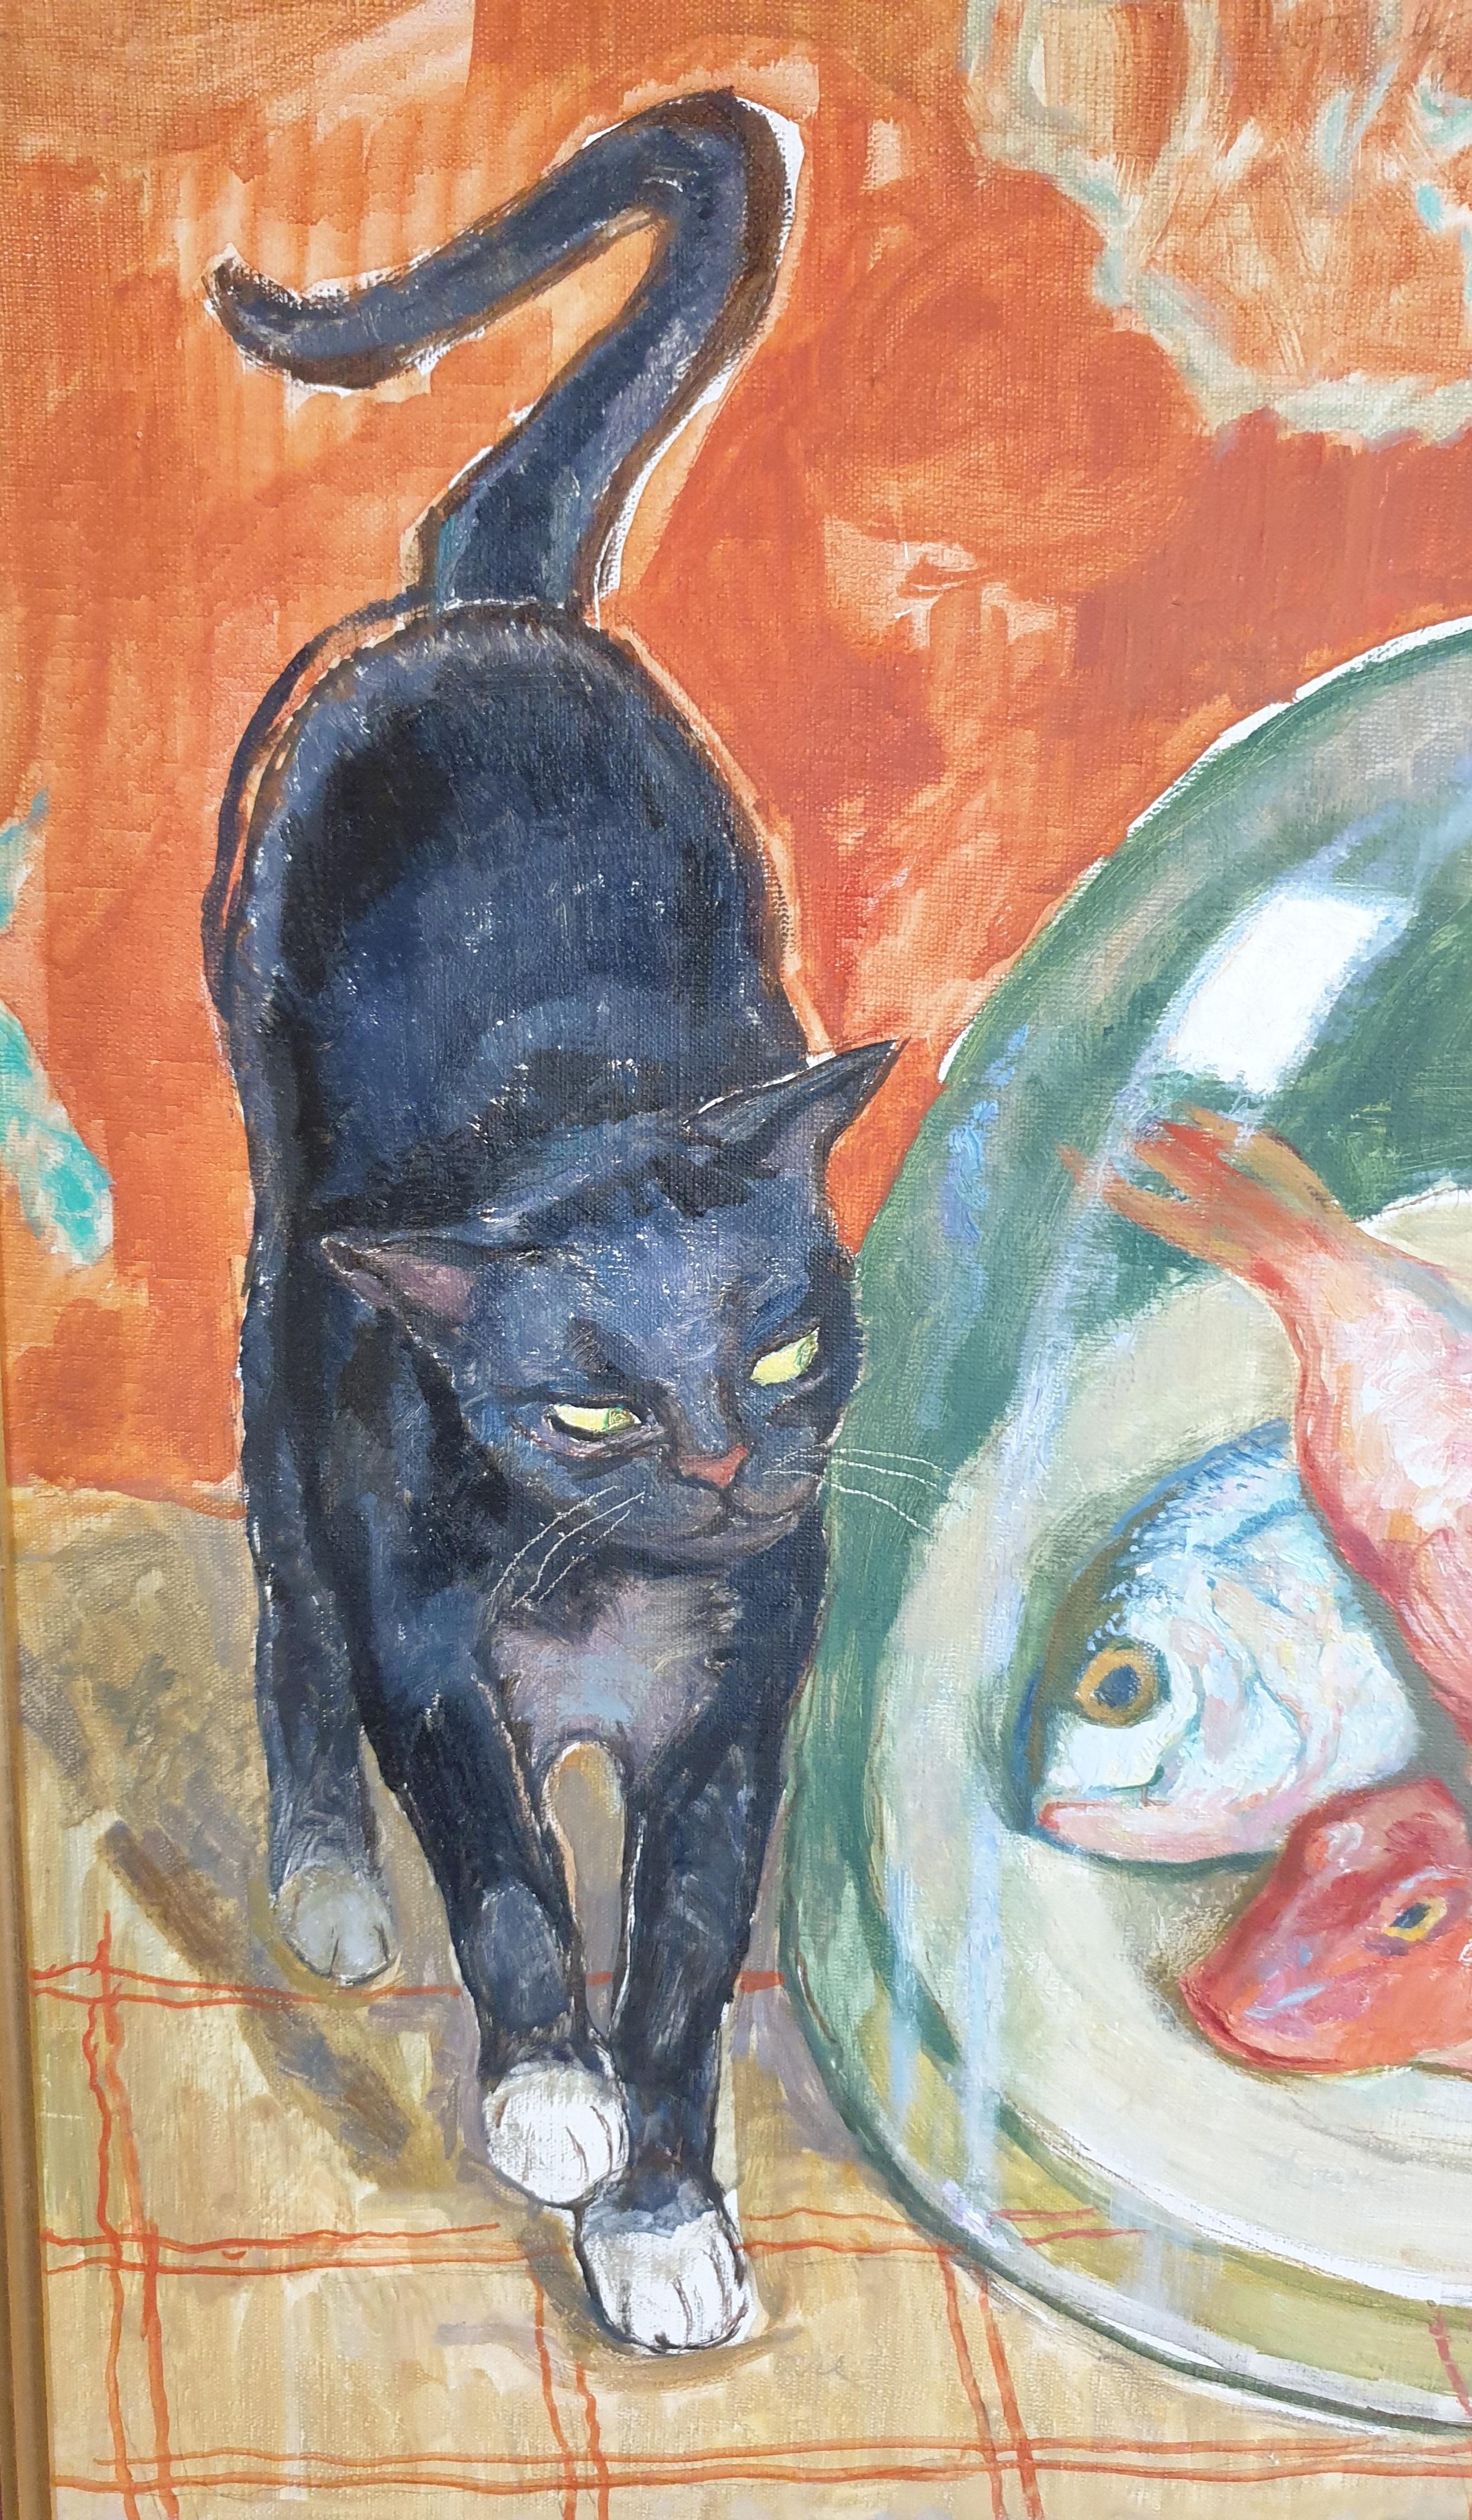 Huile sur toile de la fin du XXe siècle représentant une scène d'intérieur avec des chats et des poissons par l'artiste français Maurice Delavier, signée et datée (novembre 82) en bas à droite. Présenté dans un cadre en bois fin avec un insert en